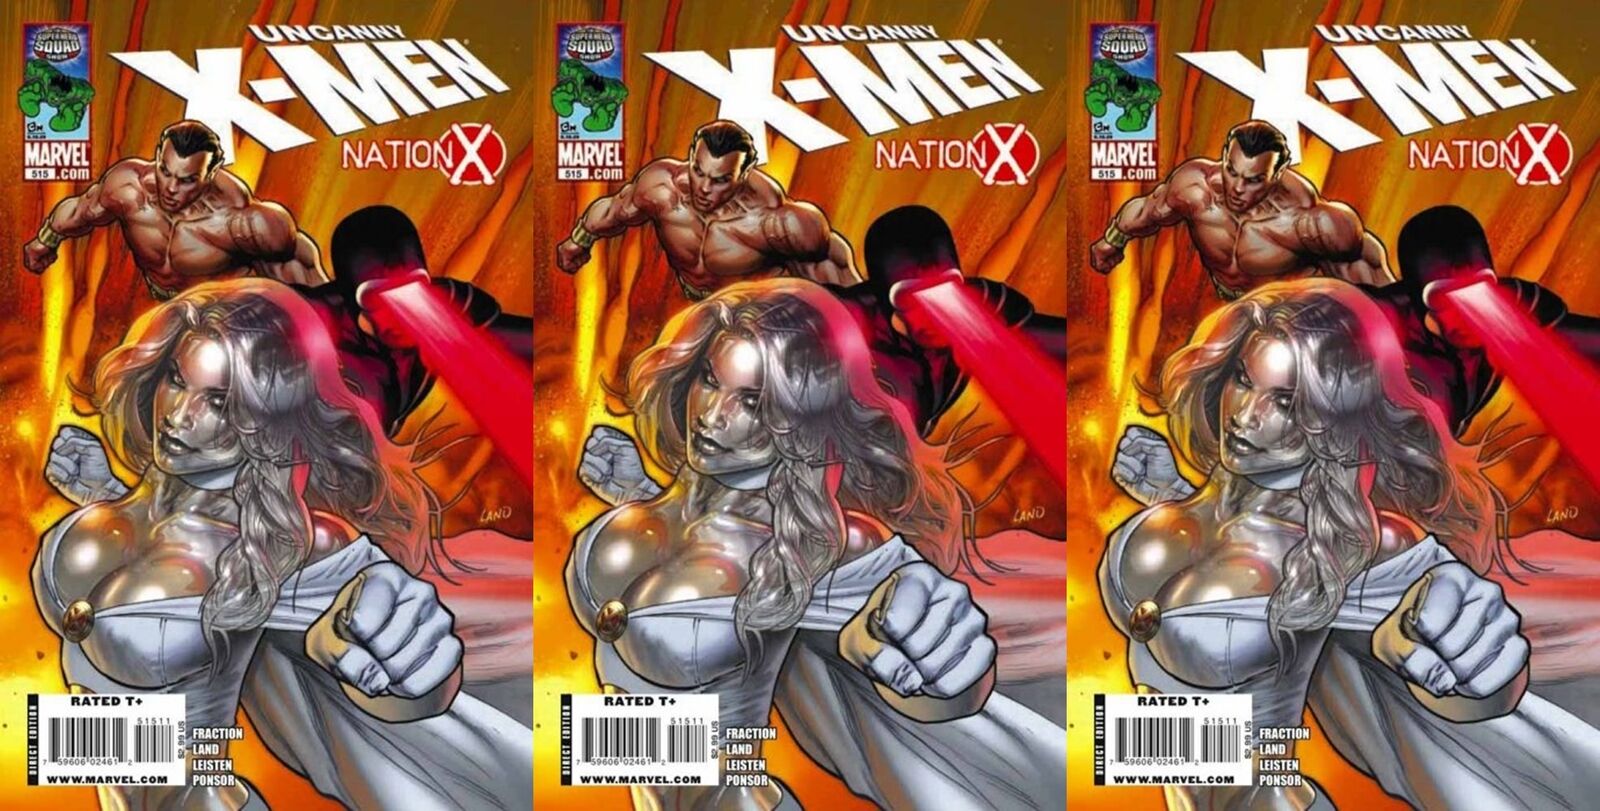 The Uncanny X-Men #515 Volume 1 (1981-2011) Marvel Comics - 3 Comics